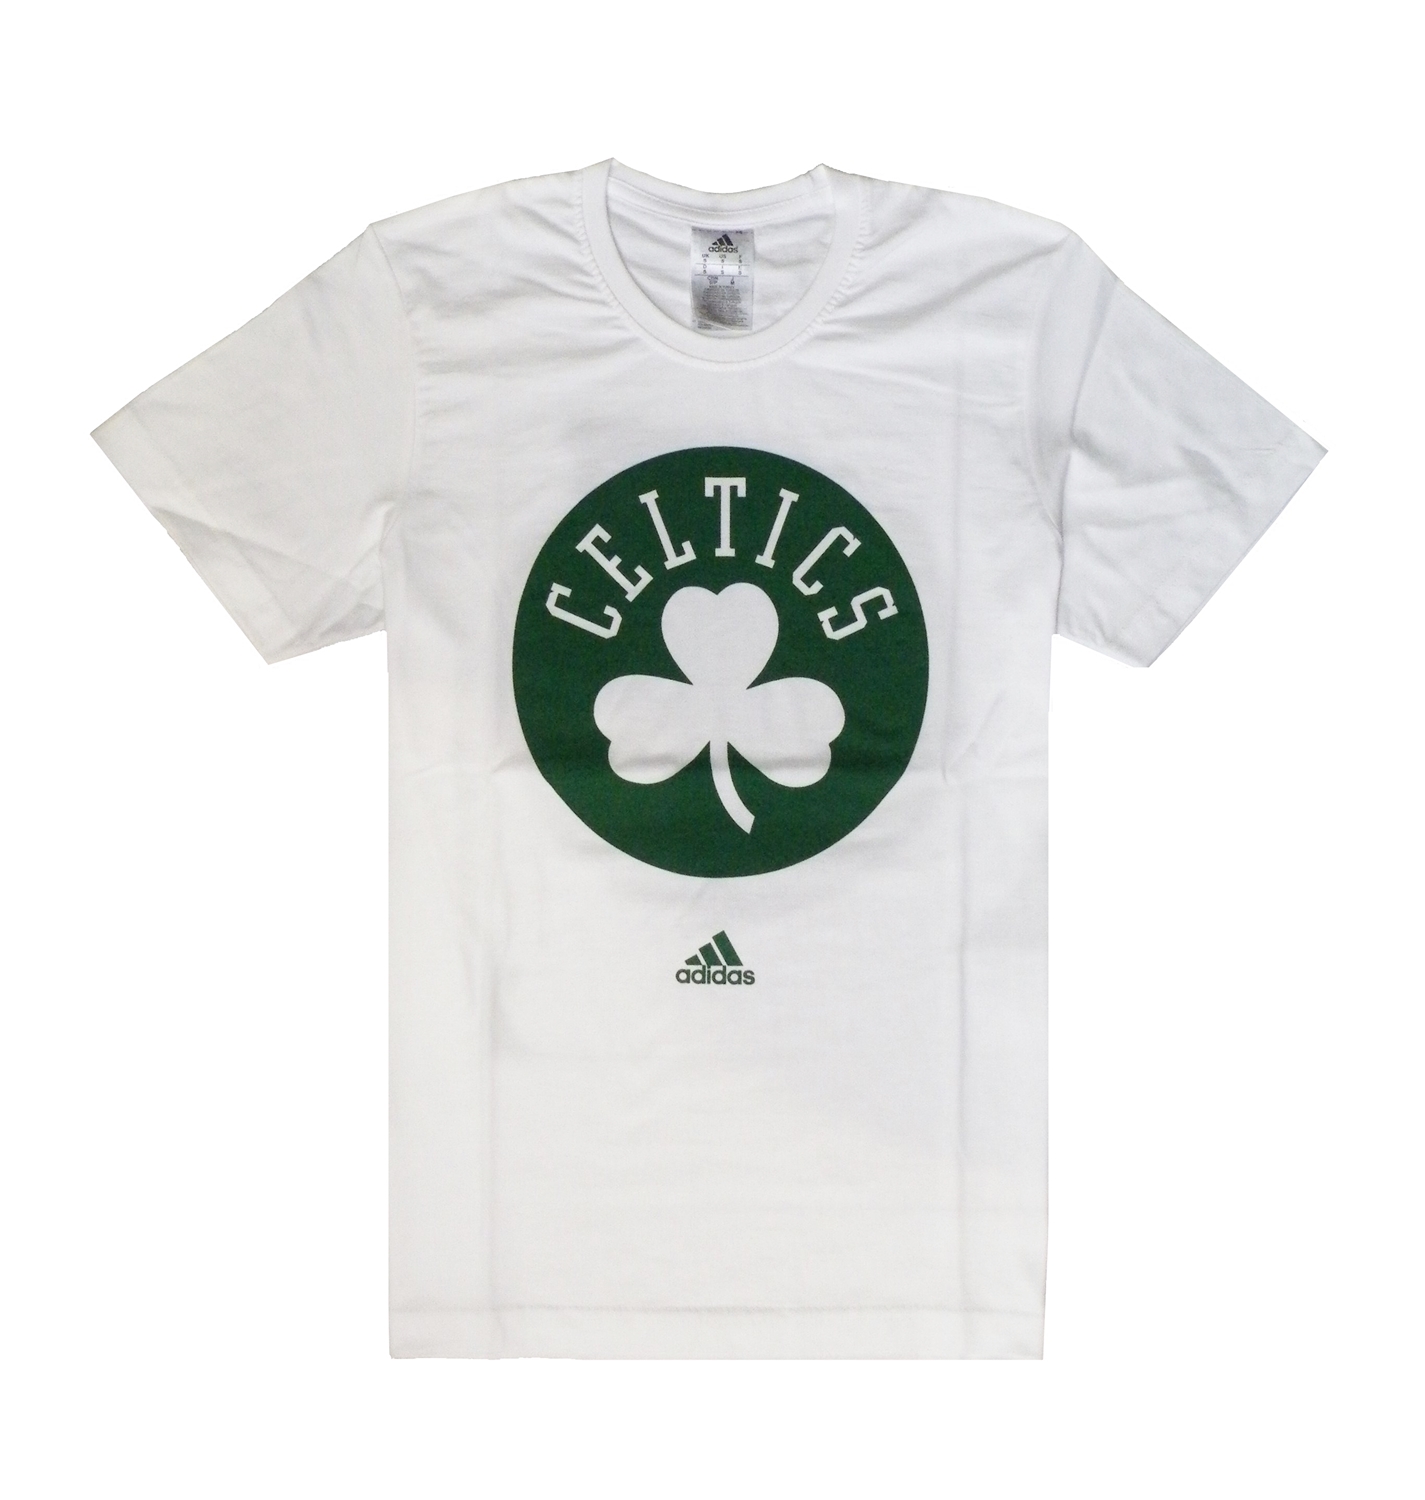 NBA Camiseta Boston Celtics (blanco/verde)